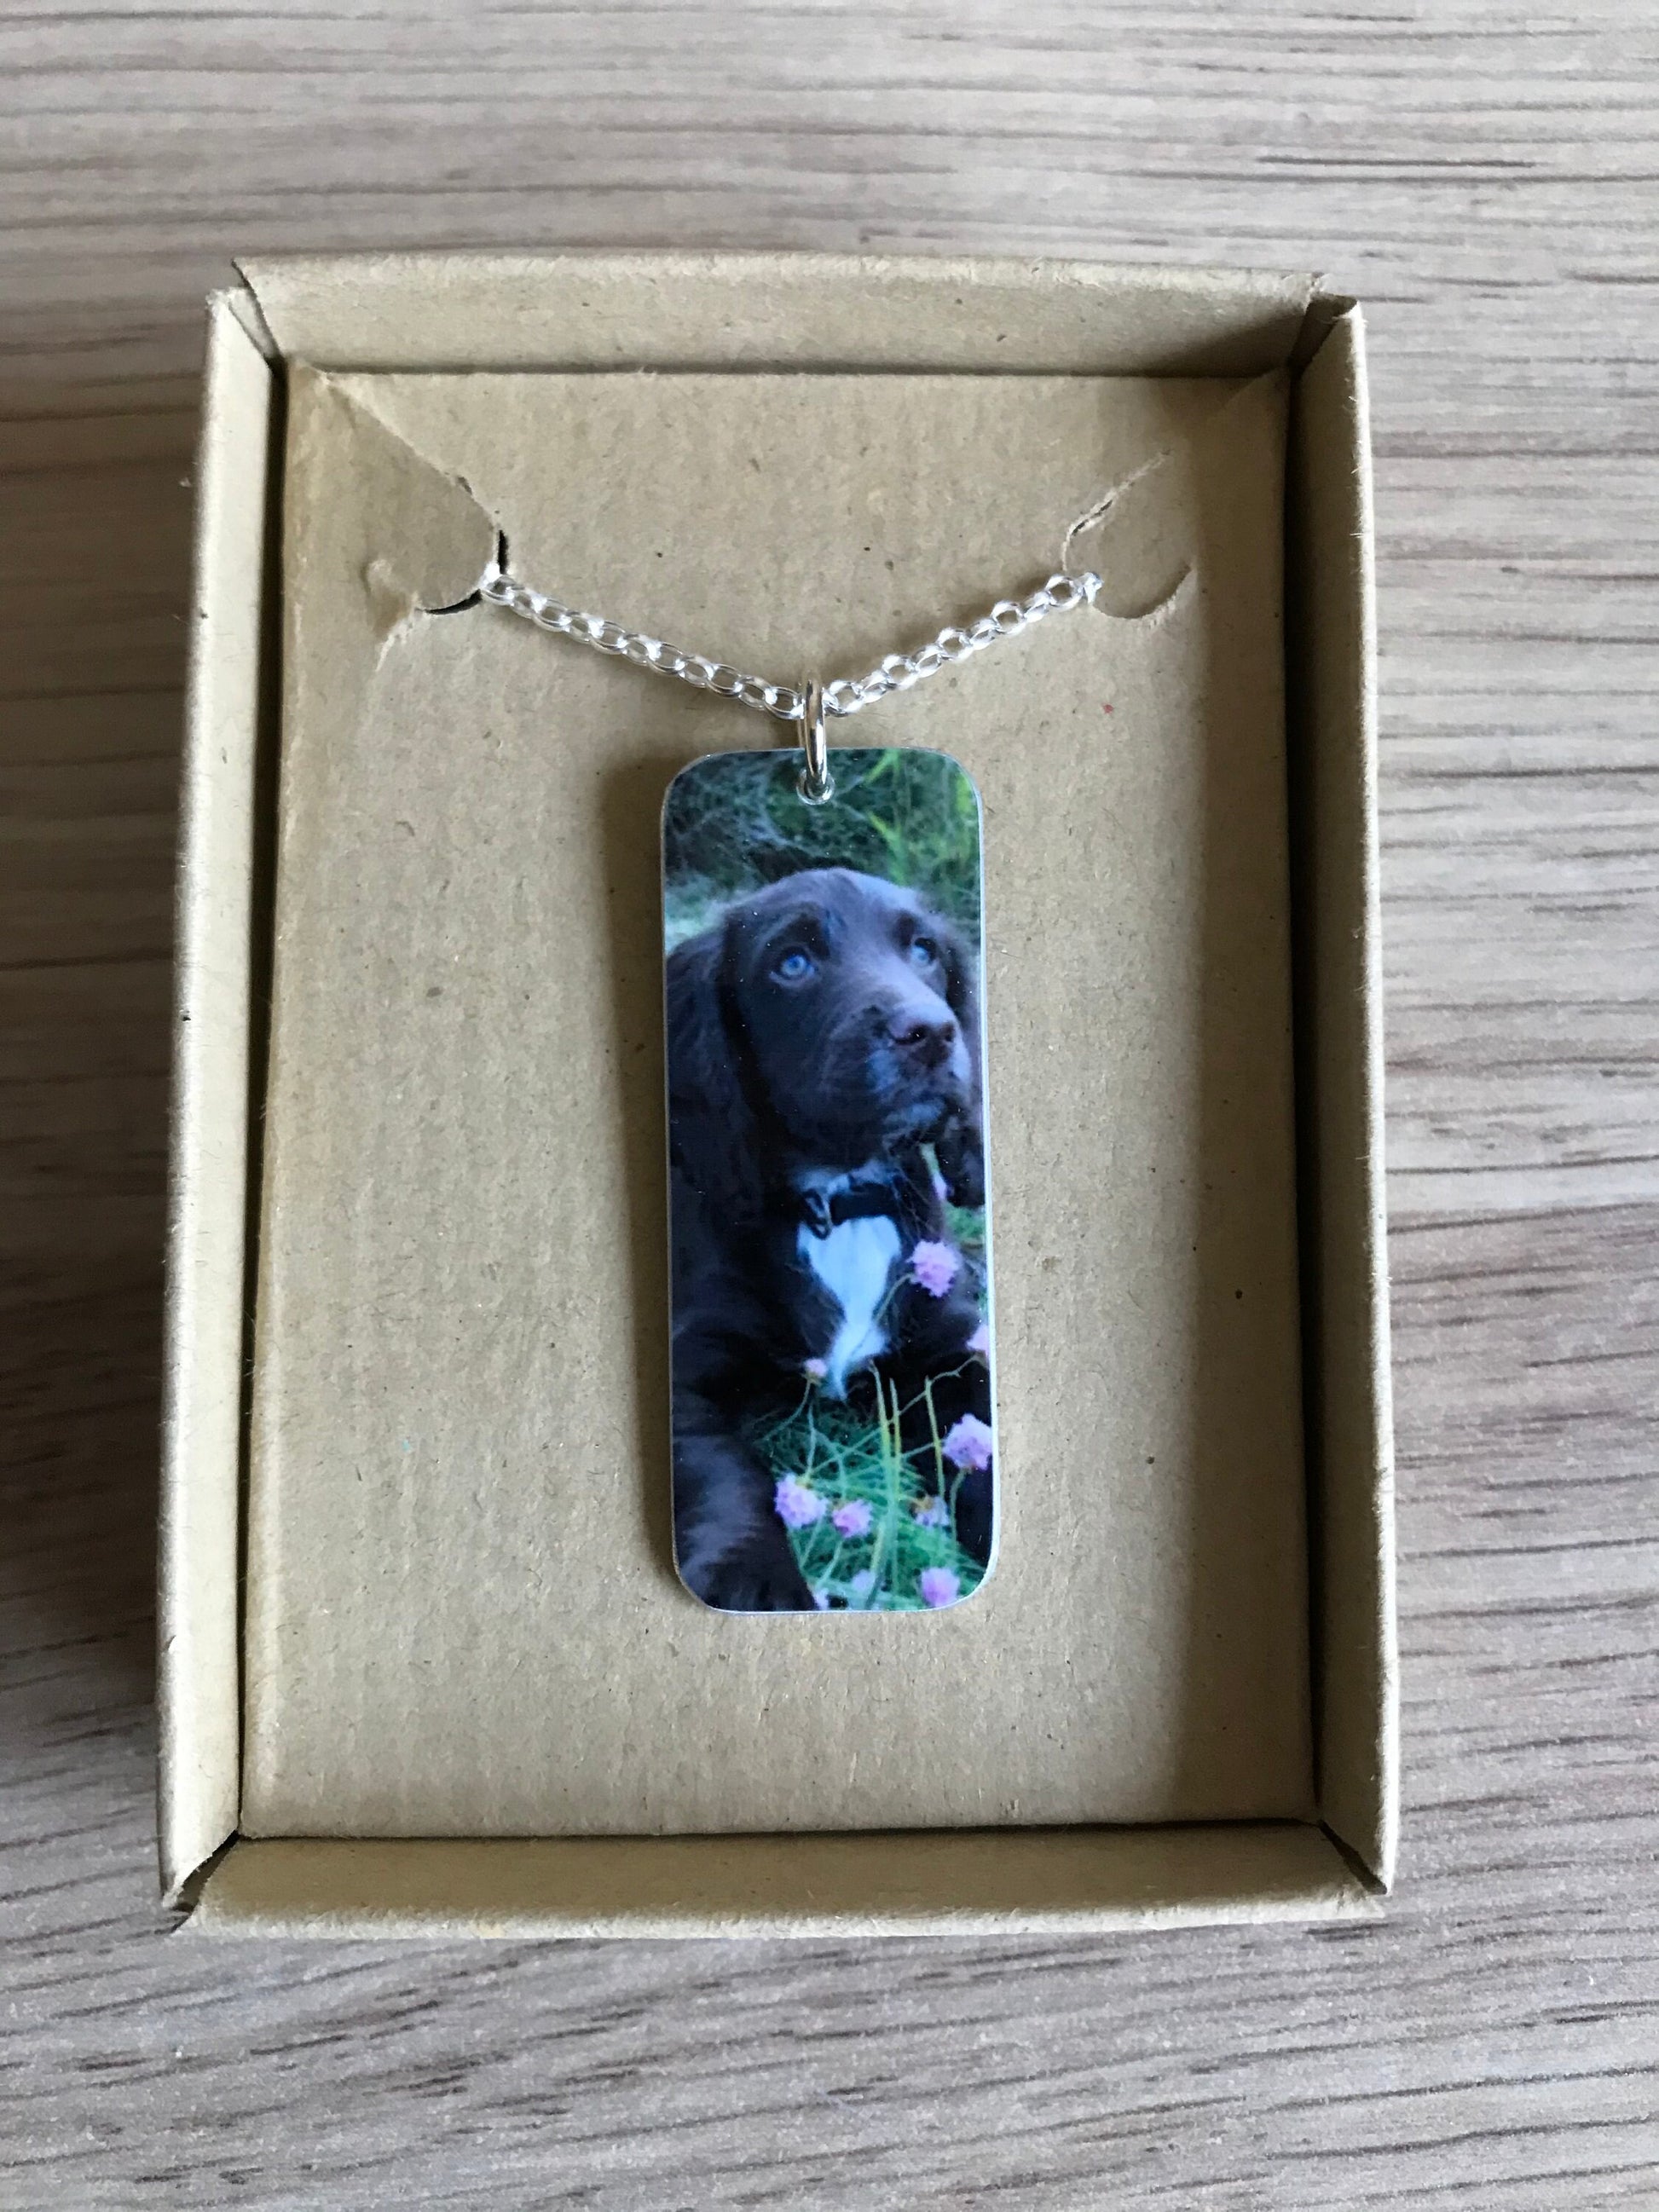 Custom Dog Photo Necklace - Long Custom Dog - Dog Necklace - Dog Lover - Dog Gift - Tag Pendant - Dog Photo Pendant - Dog Photo Tag Pendant